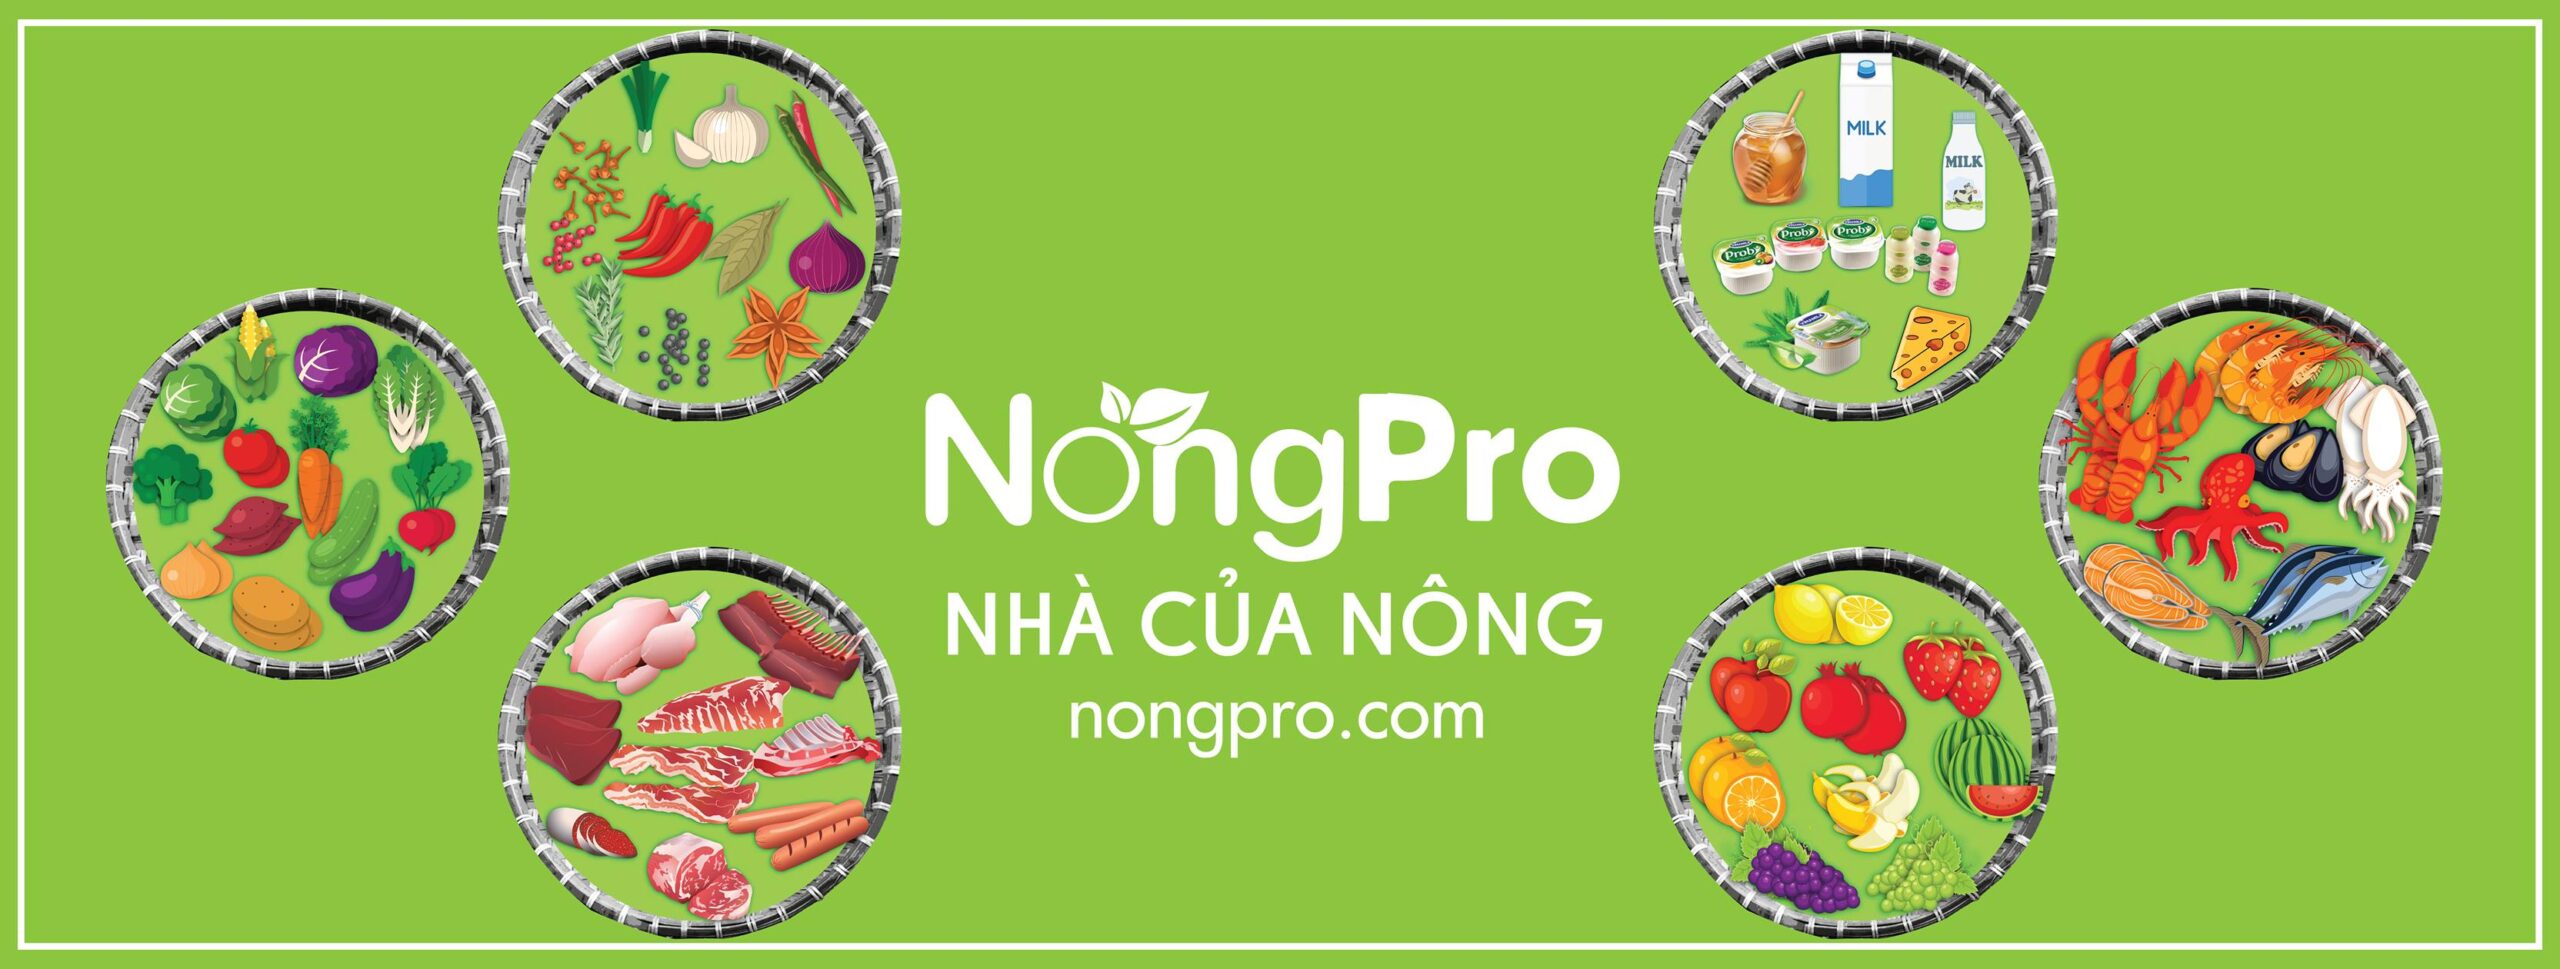 Thực Phẩm Sạch NongPro - nhà cung cấp nguyên vật liệu nhà hàng tại miền Trung 